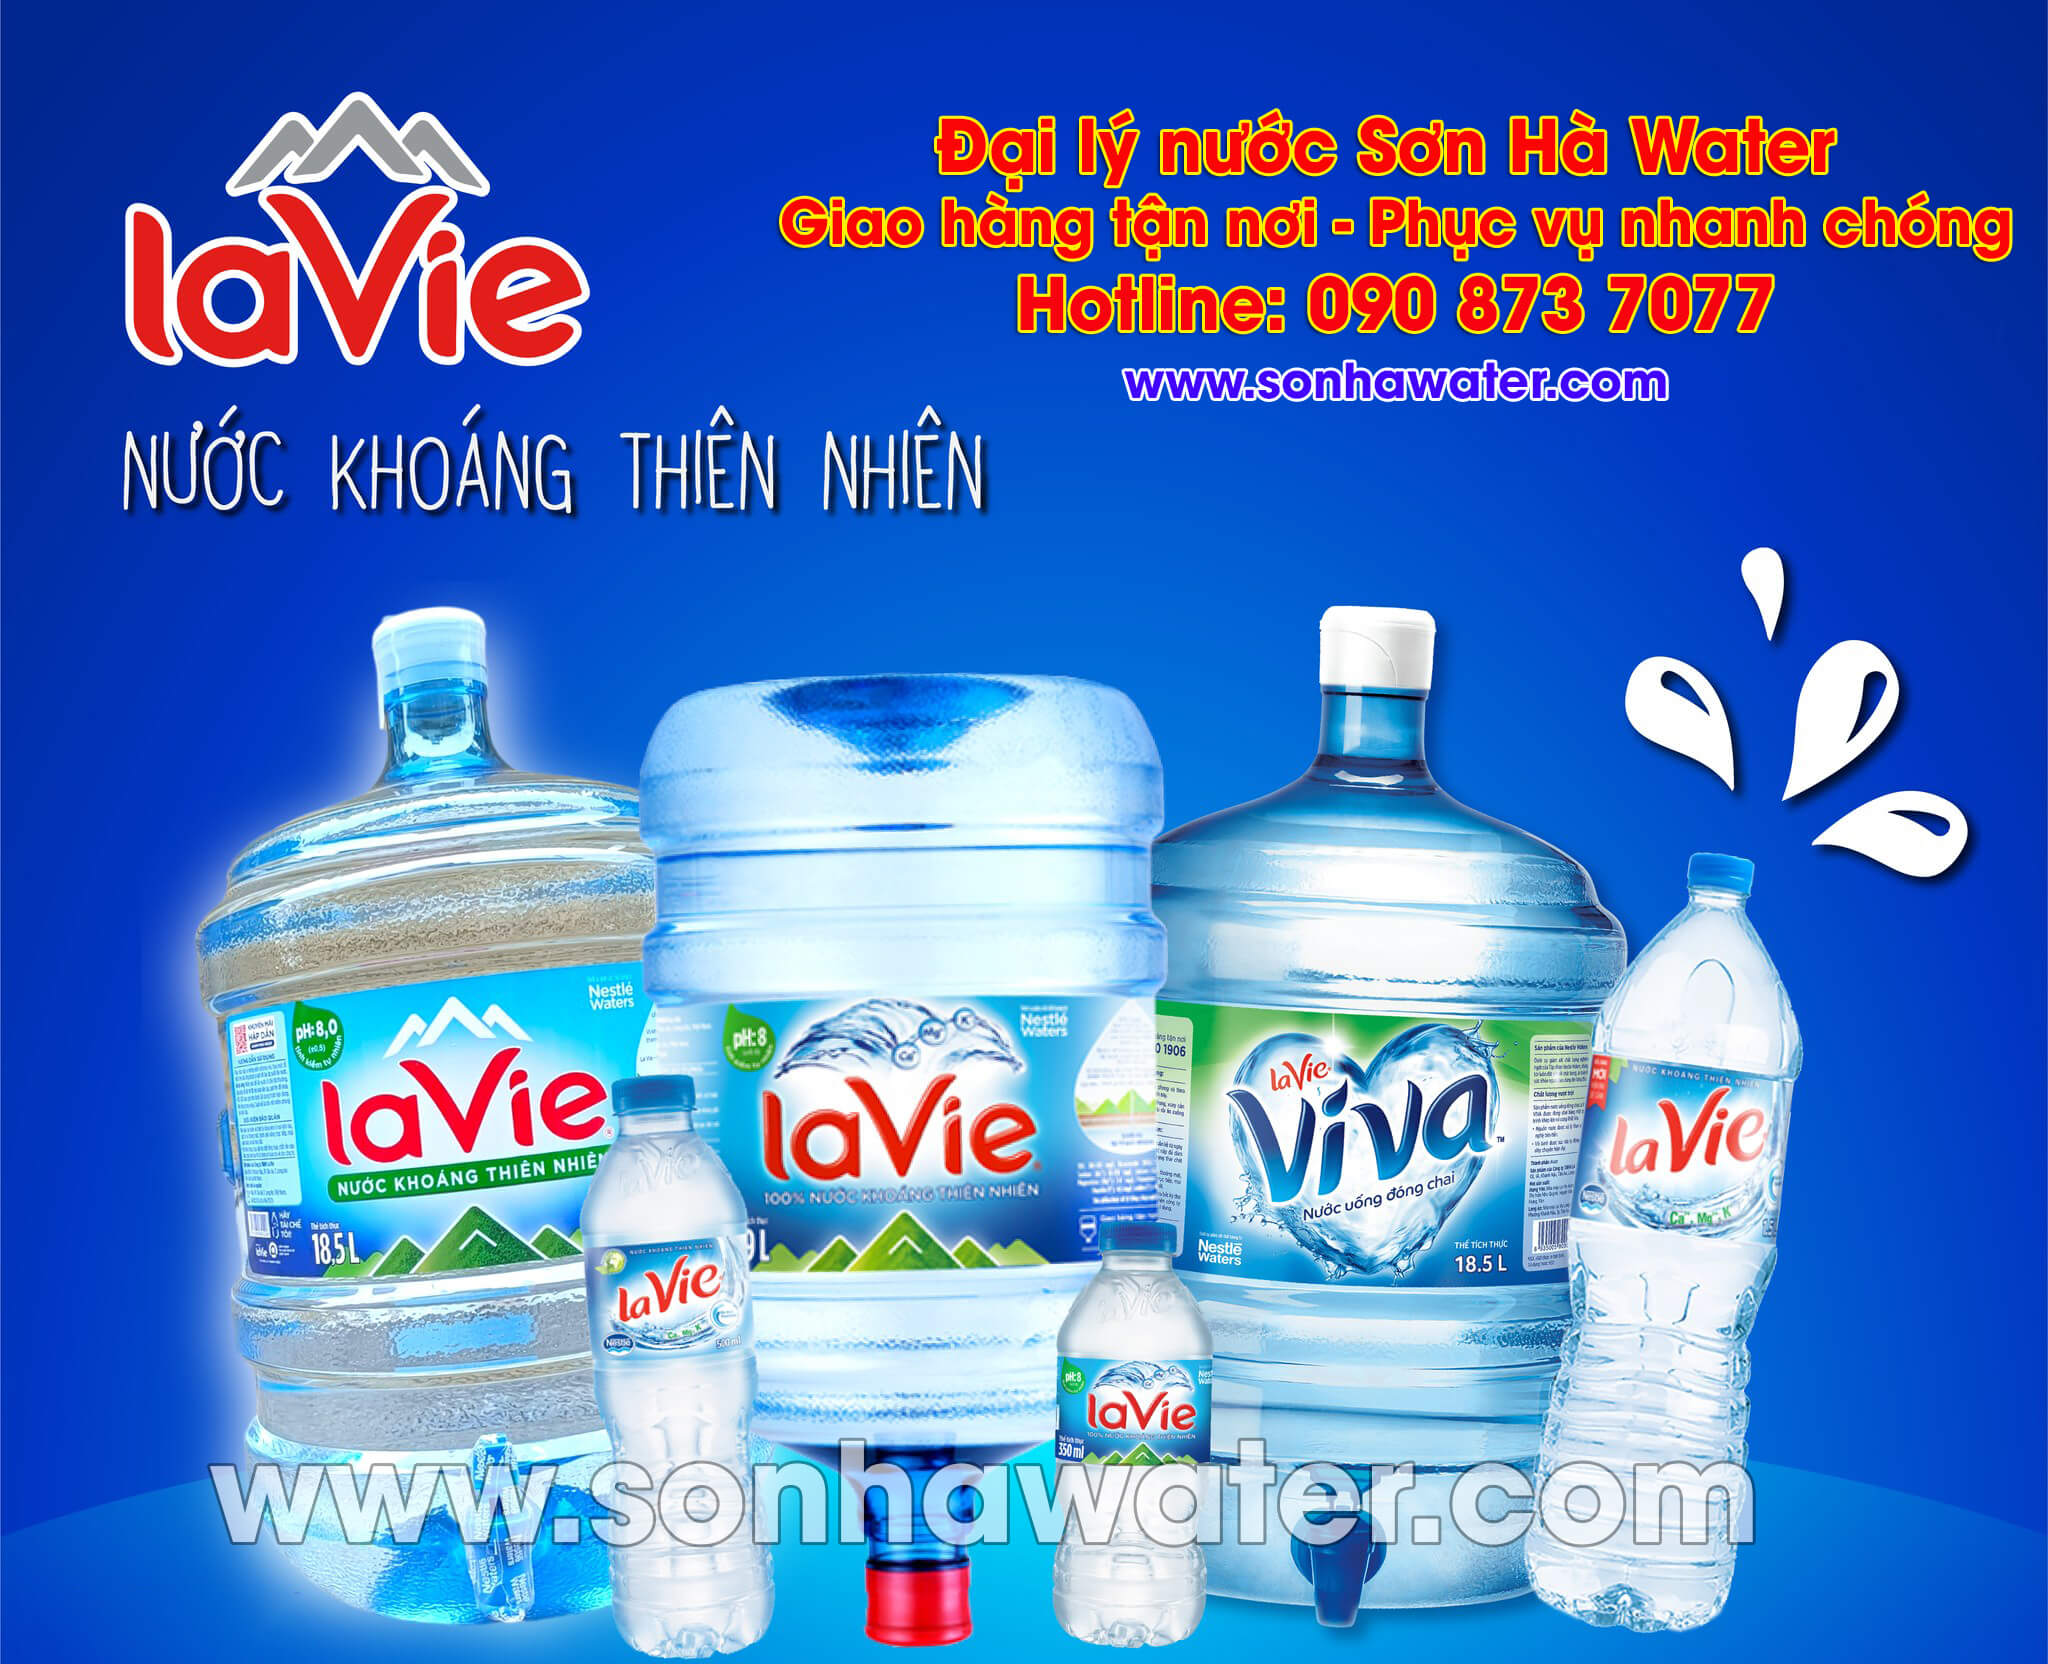 Đại lý nước khoáng LaVie chính hãng - Sơn Hà Water